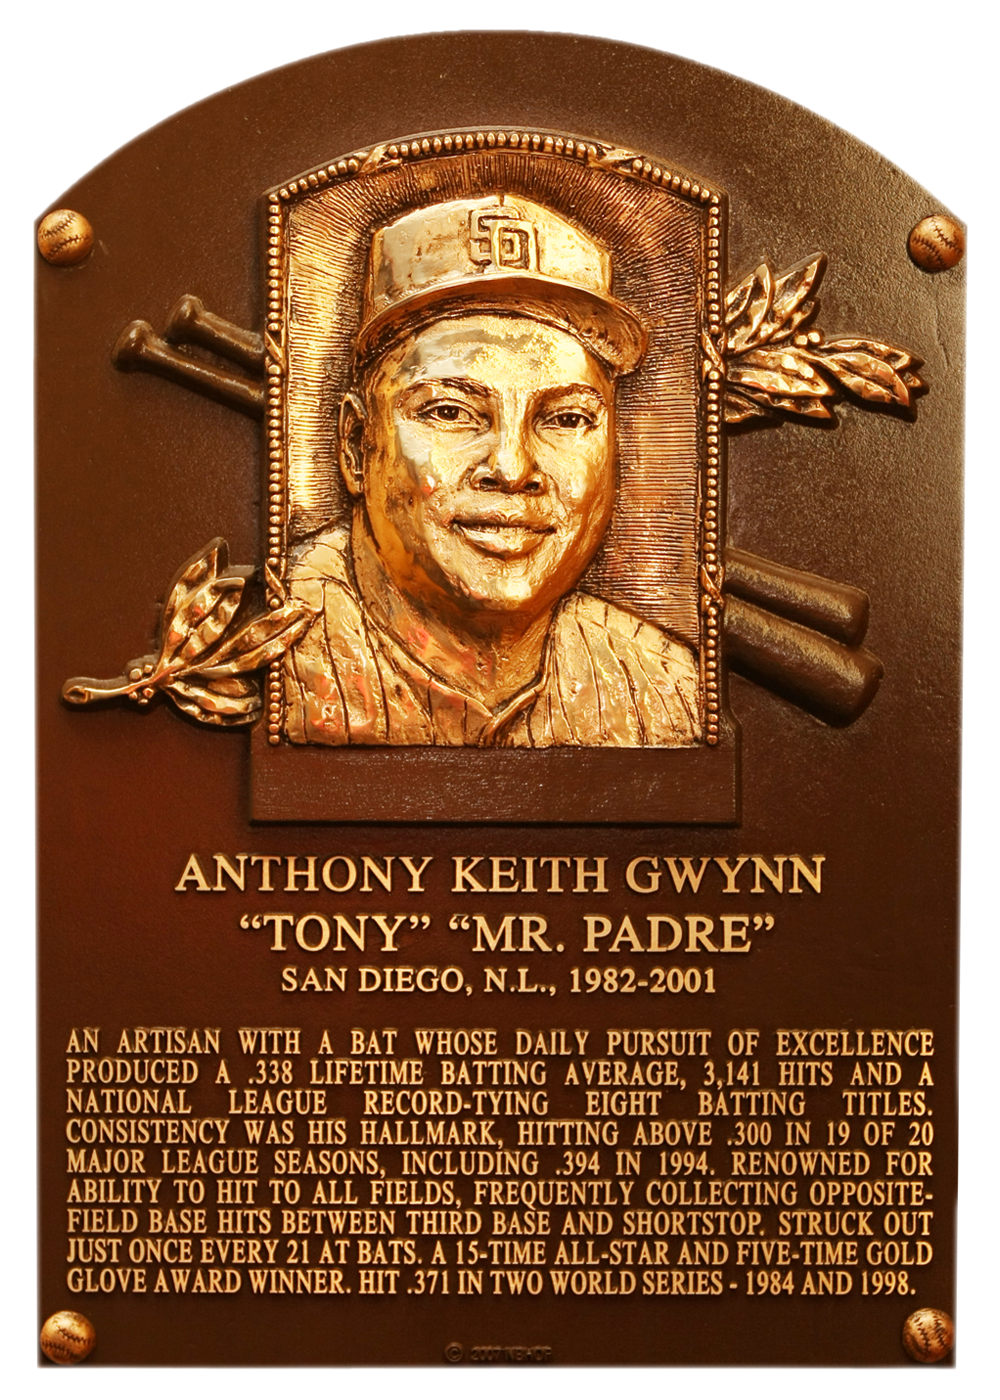 Tony Gwynn Hall of Fame plaque